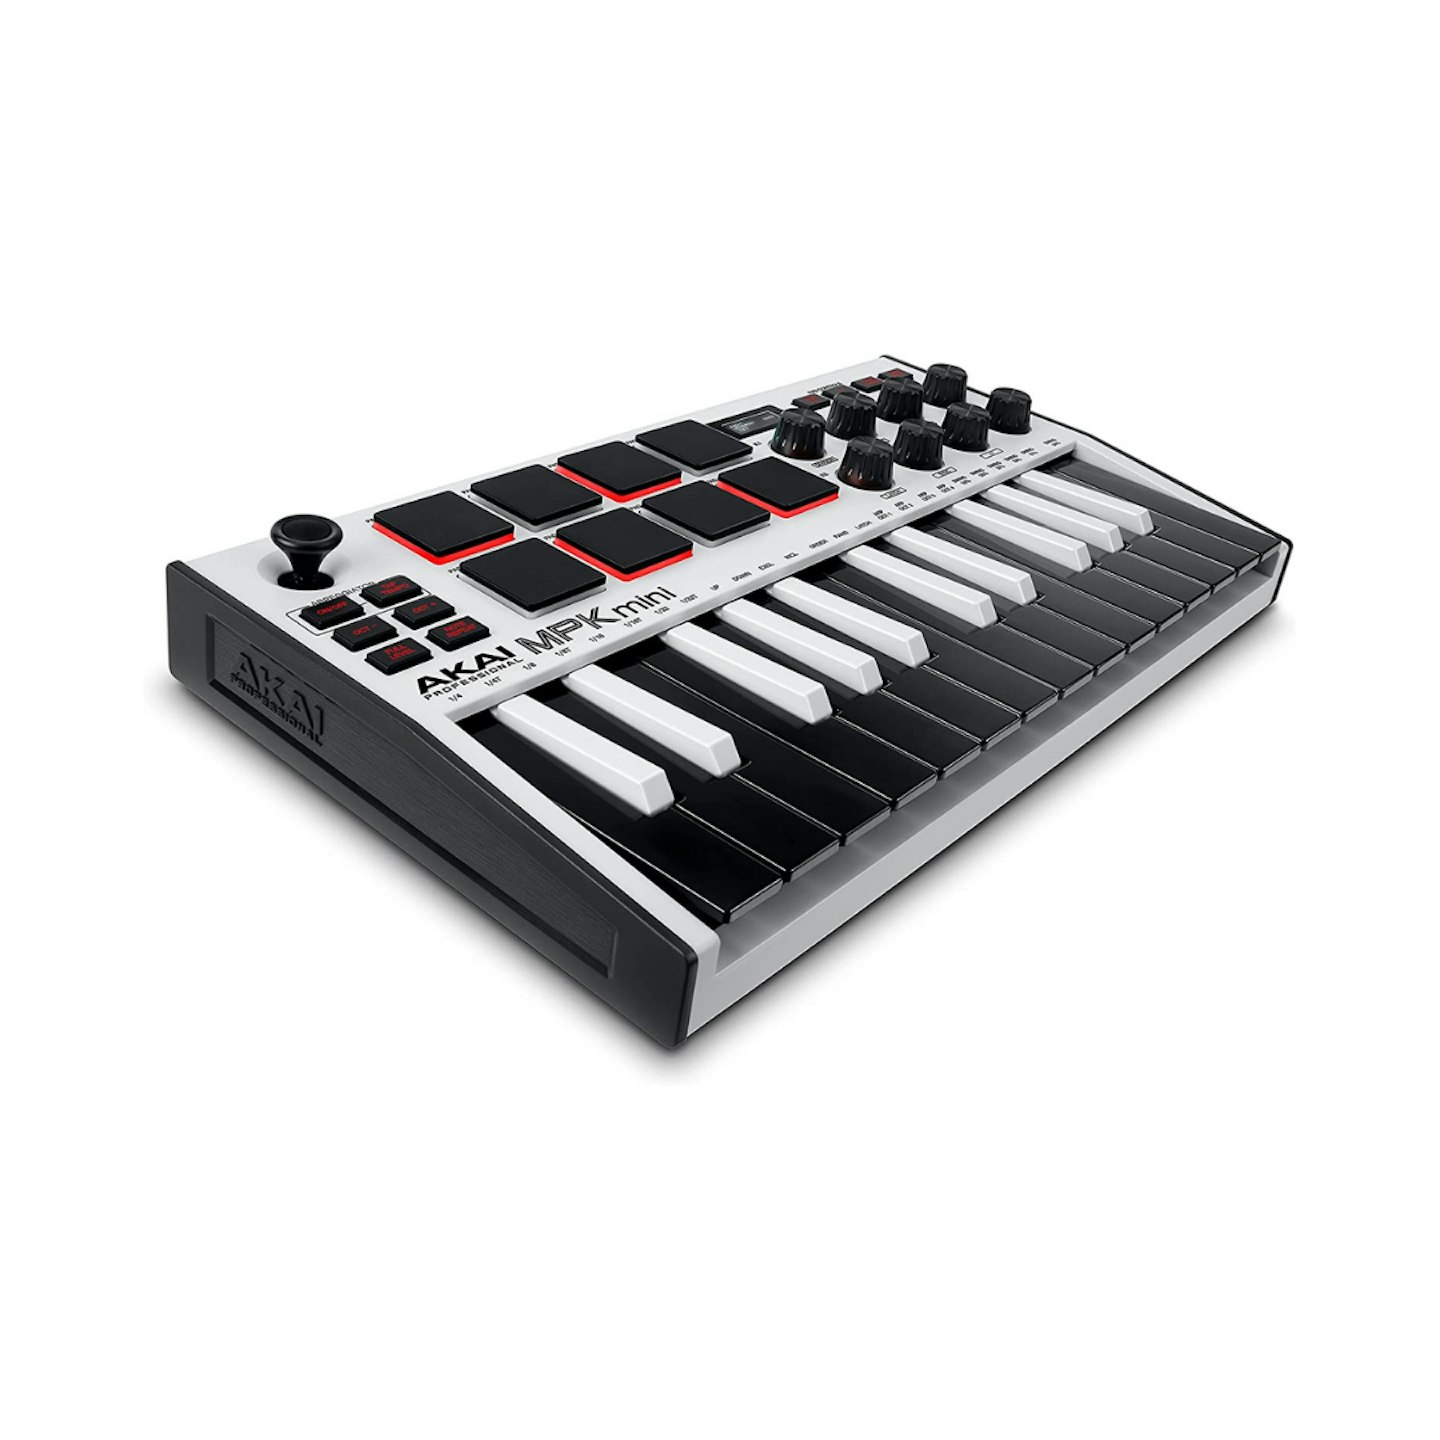 AKAI Professional MPK Mini MK3 MIDI Keyboard